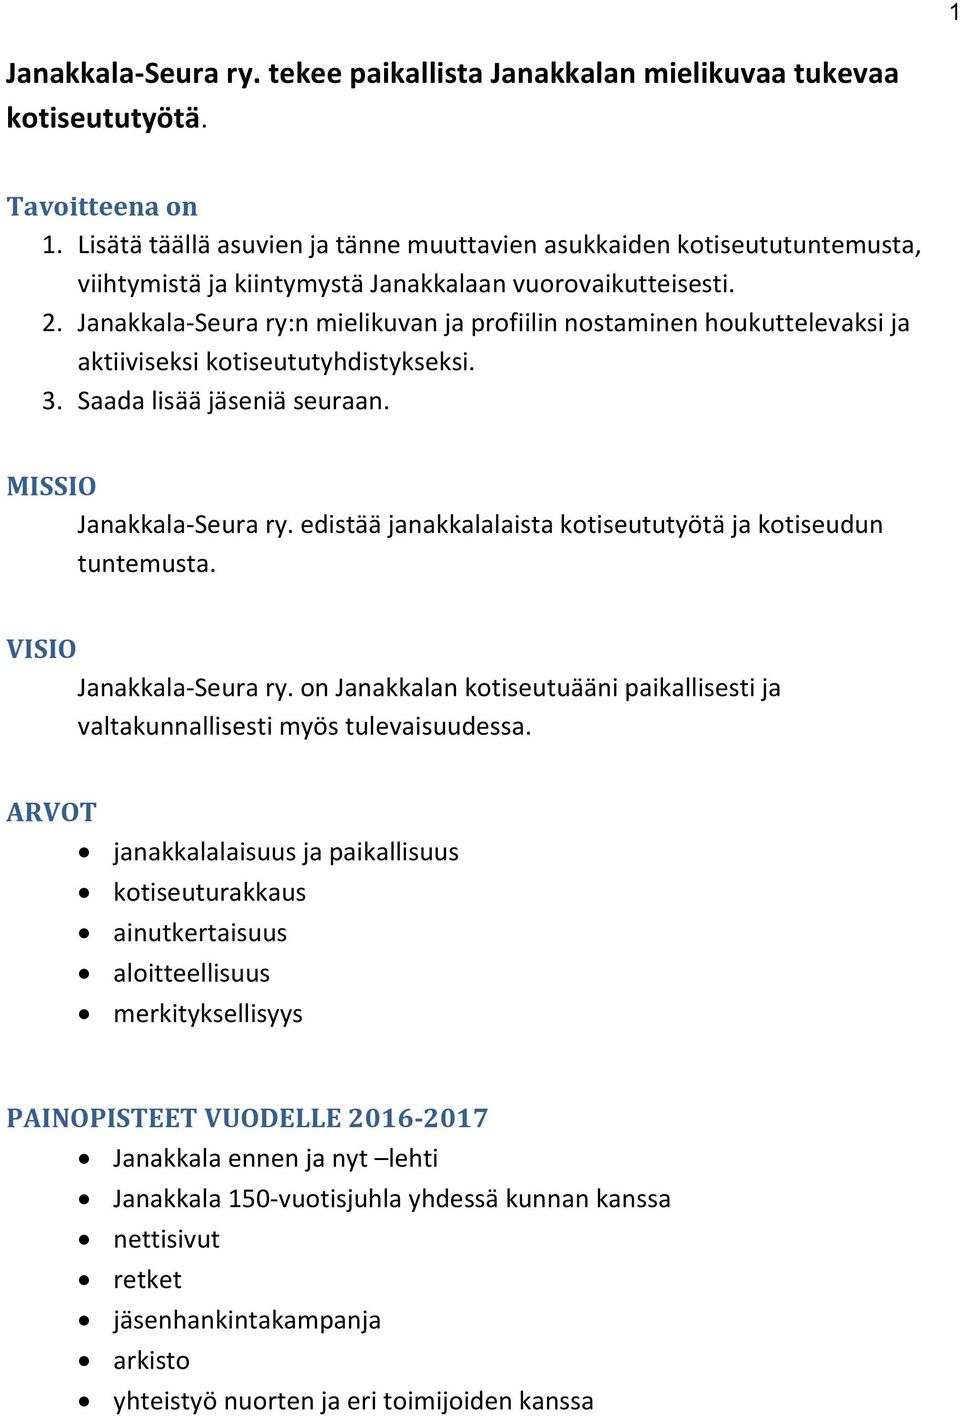 Janakkala-Seura ry:n mielikuvan ja profiilin nostaminen houkuttelevaksi ja aktiiviseksi kotiseututyhdistykseksi. 3. Saada lisää jäseniä seuraan. MISSIO Janakkala-Seura ry.